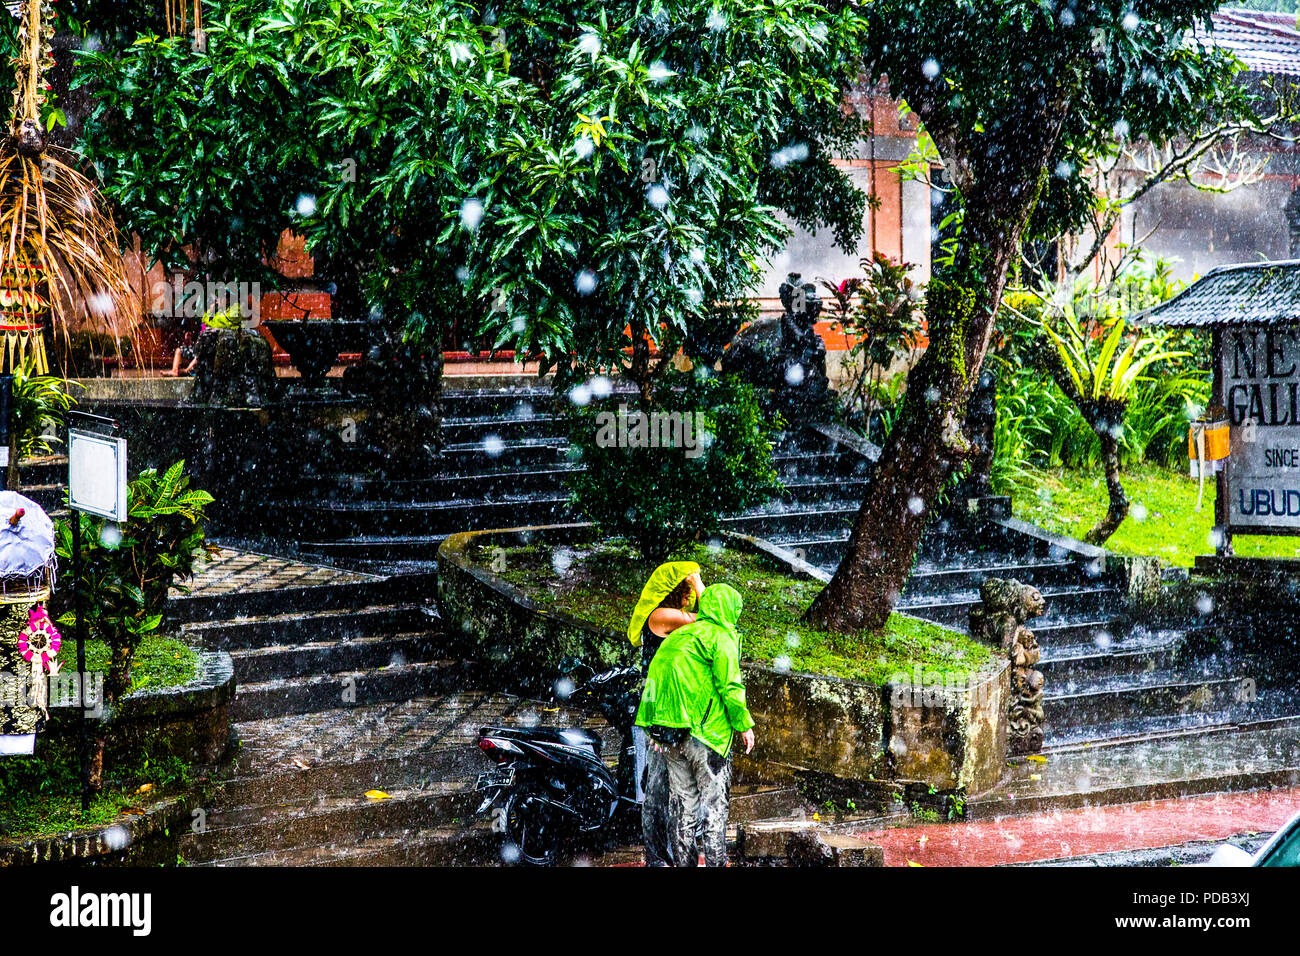 Deux personnes en vert imperméable dans une averse tropcial à Ubud, Bali. Shutterspeed rapide pour figer les gouttes de pluie. Banque D'Images